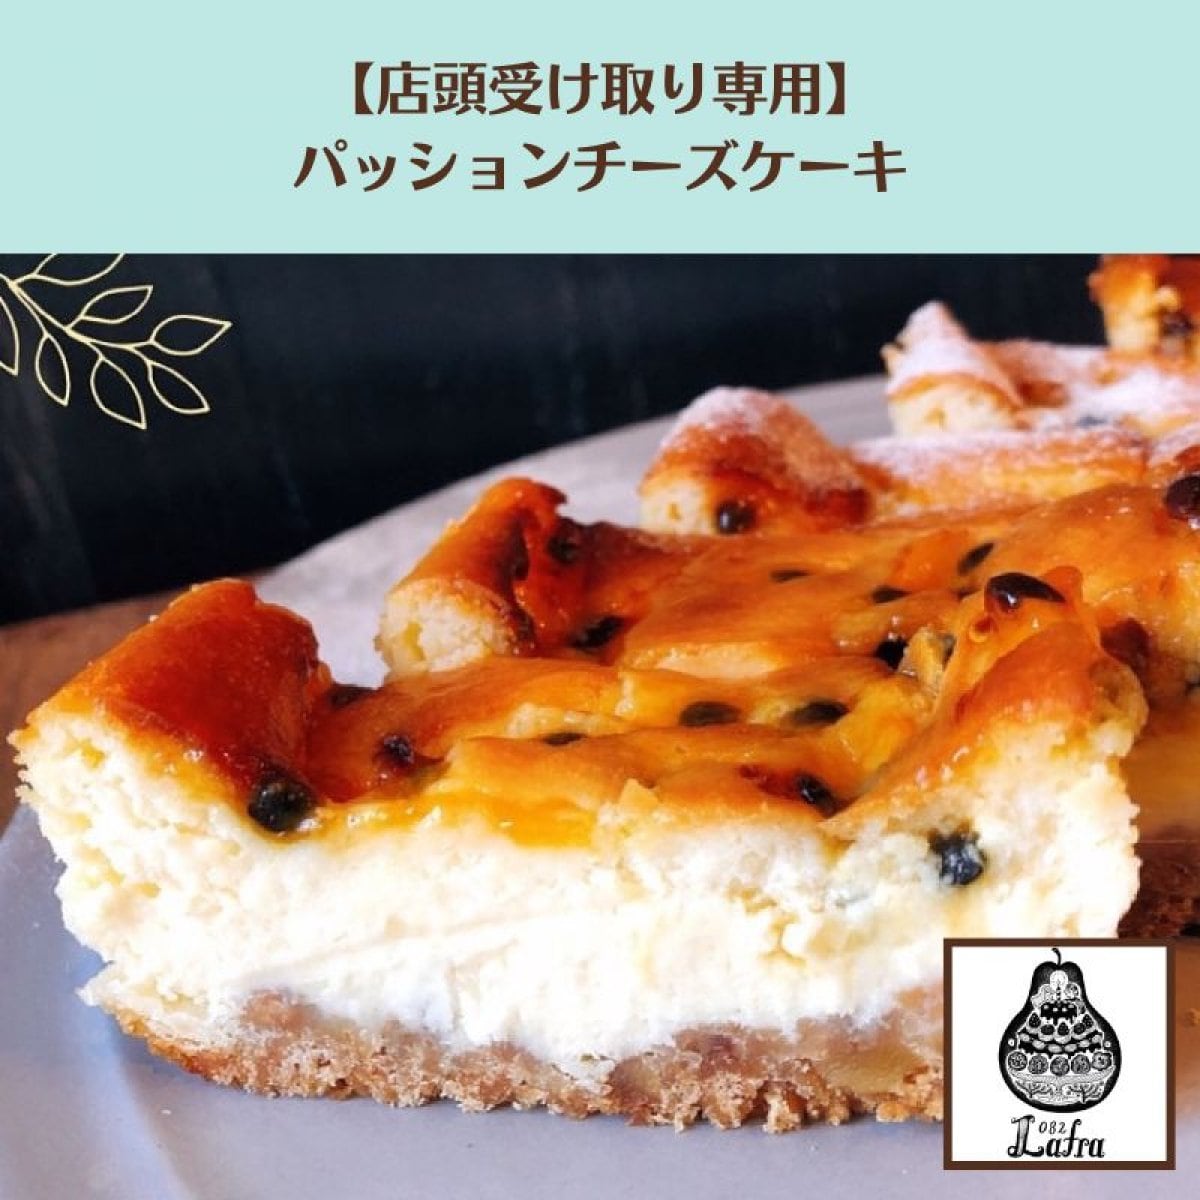 【店頭受け取り】パッションフルーツチーズケーキ《Natural passion okinawa 無農薬パッション》